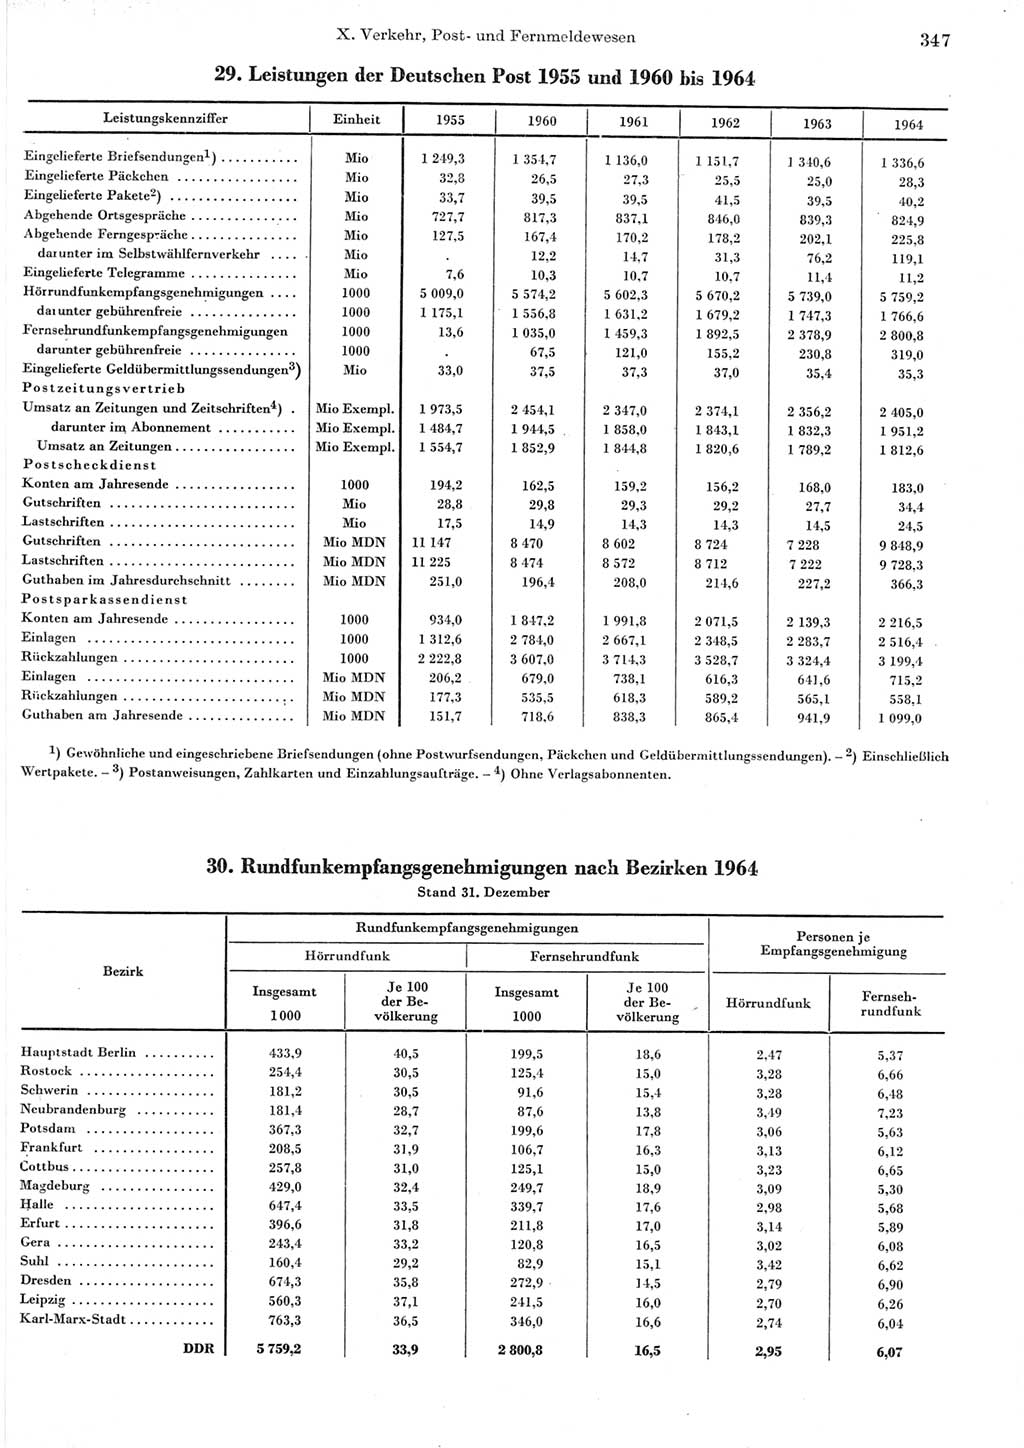 Statistisches Jahrbuch der Deutschen Demokratischen Republik (DDR) 1965, Seite 347 (Stat. Jb. DDR 1965, S. 347)